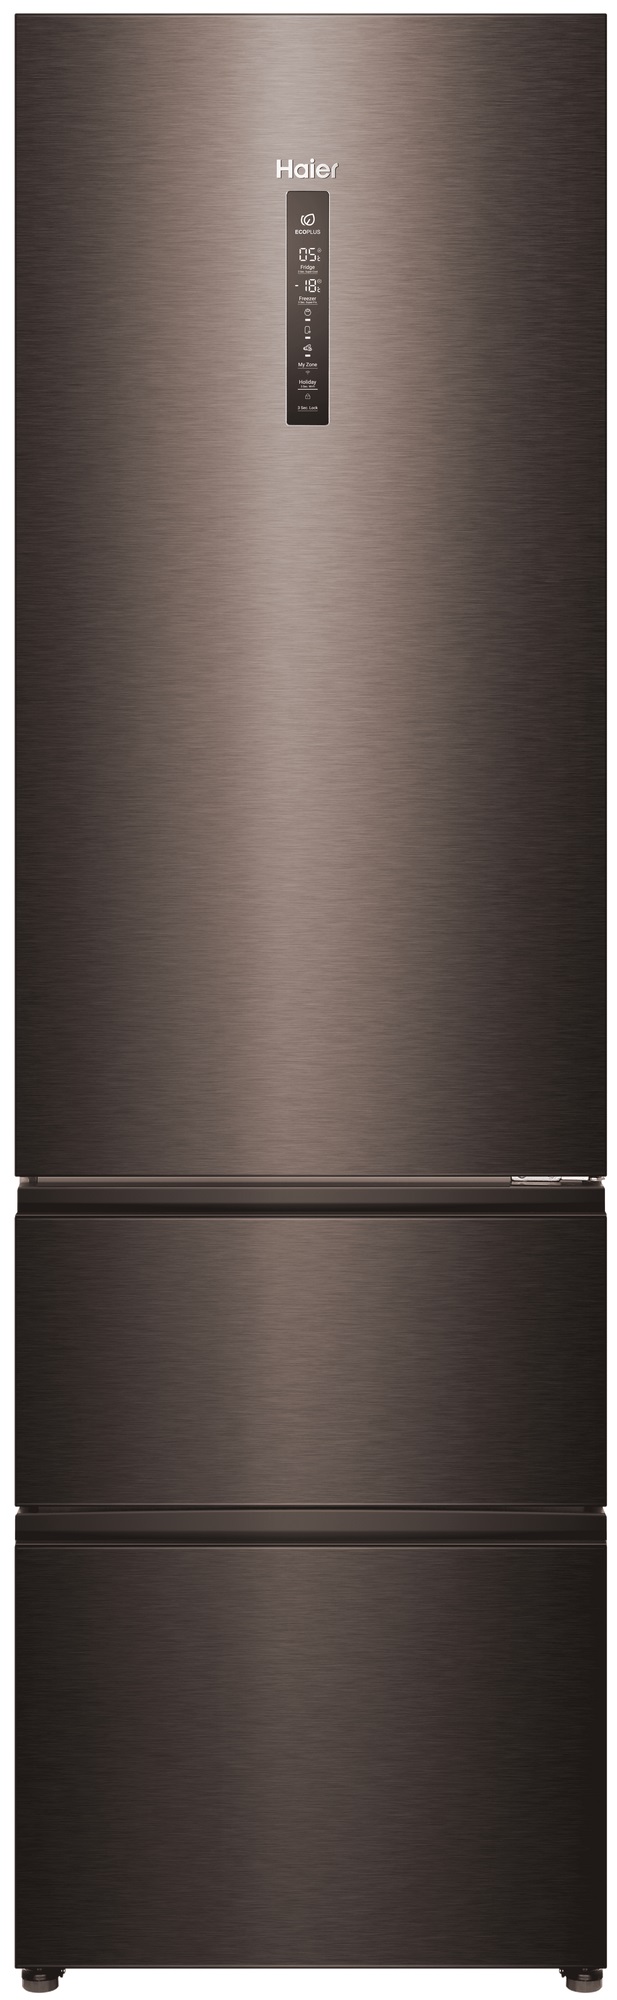 Холодильник Haier A4F739CDBGU1 серый холодильник pozis rk fnf 170 белый серый